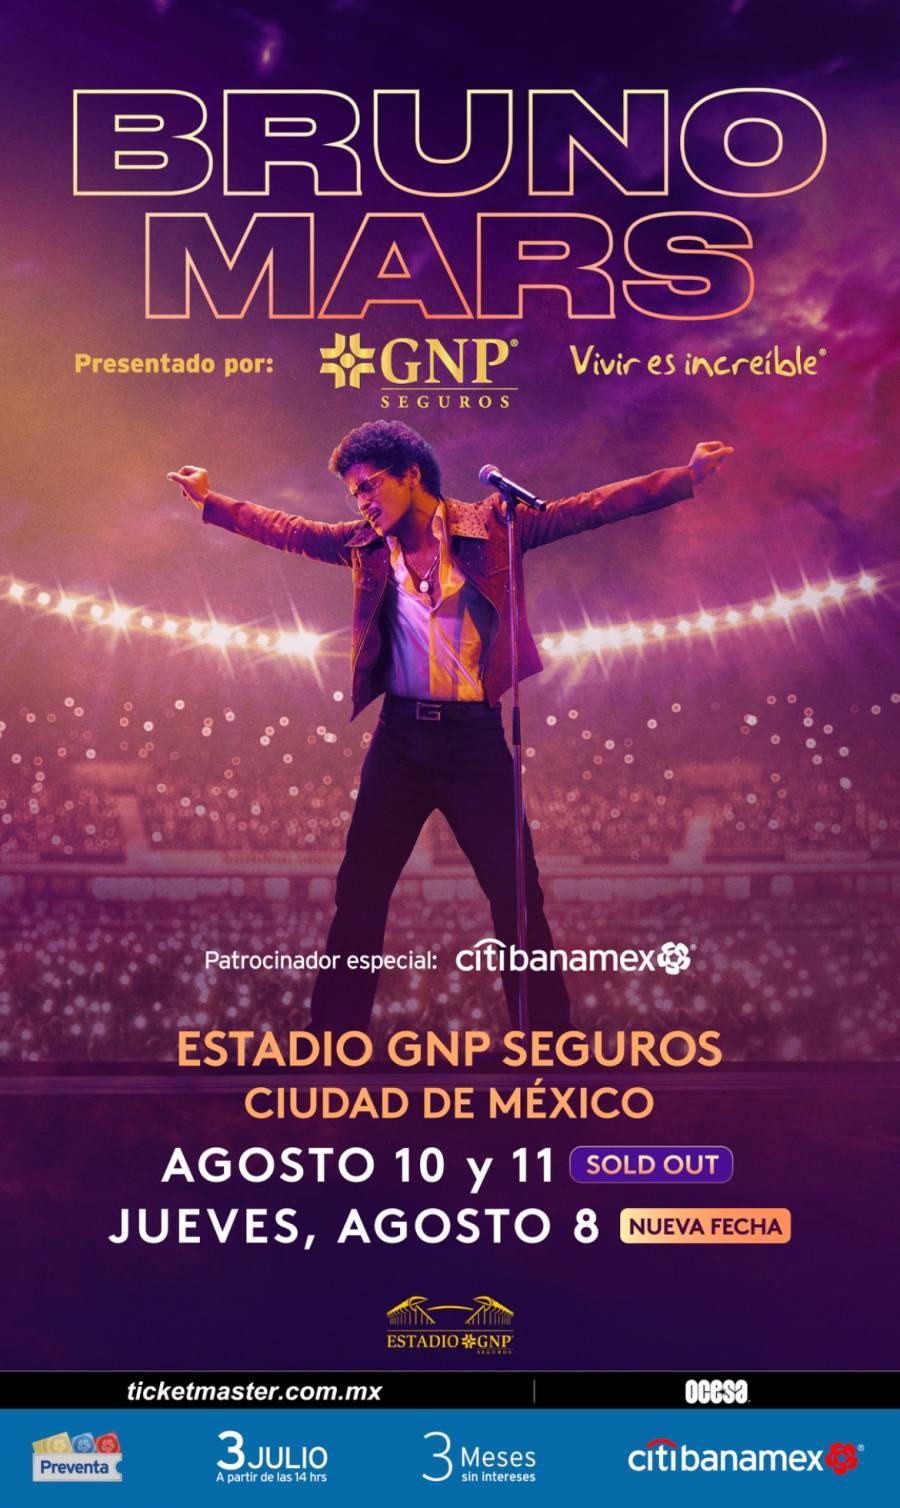 Bruno Mars anuncia tercera fecha en el Estadio GNP Seguros